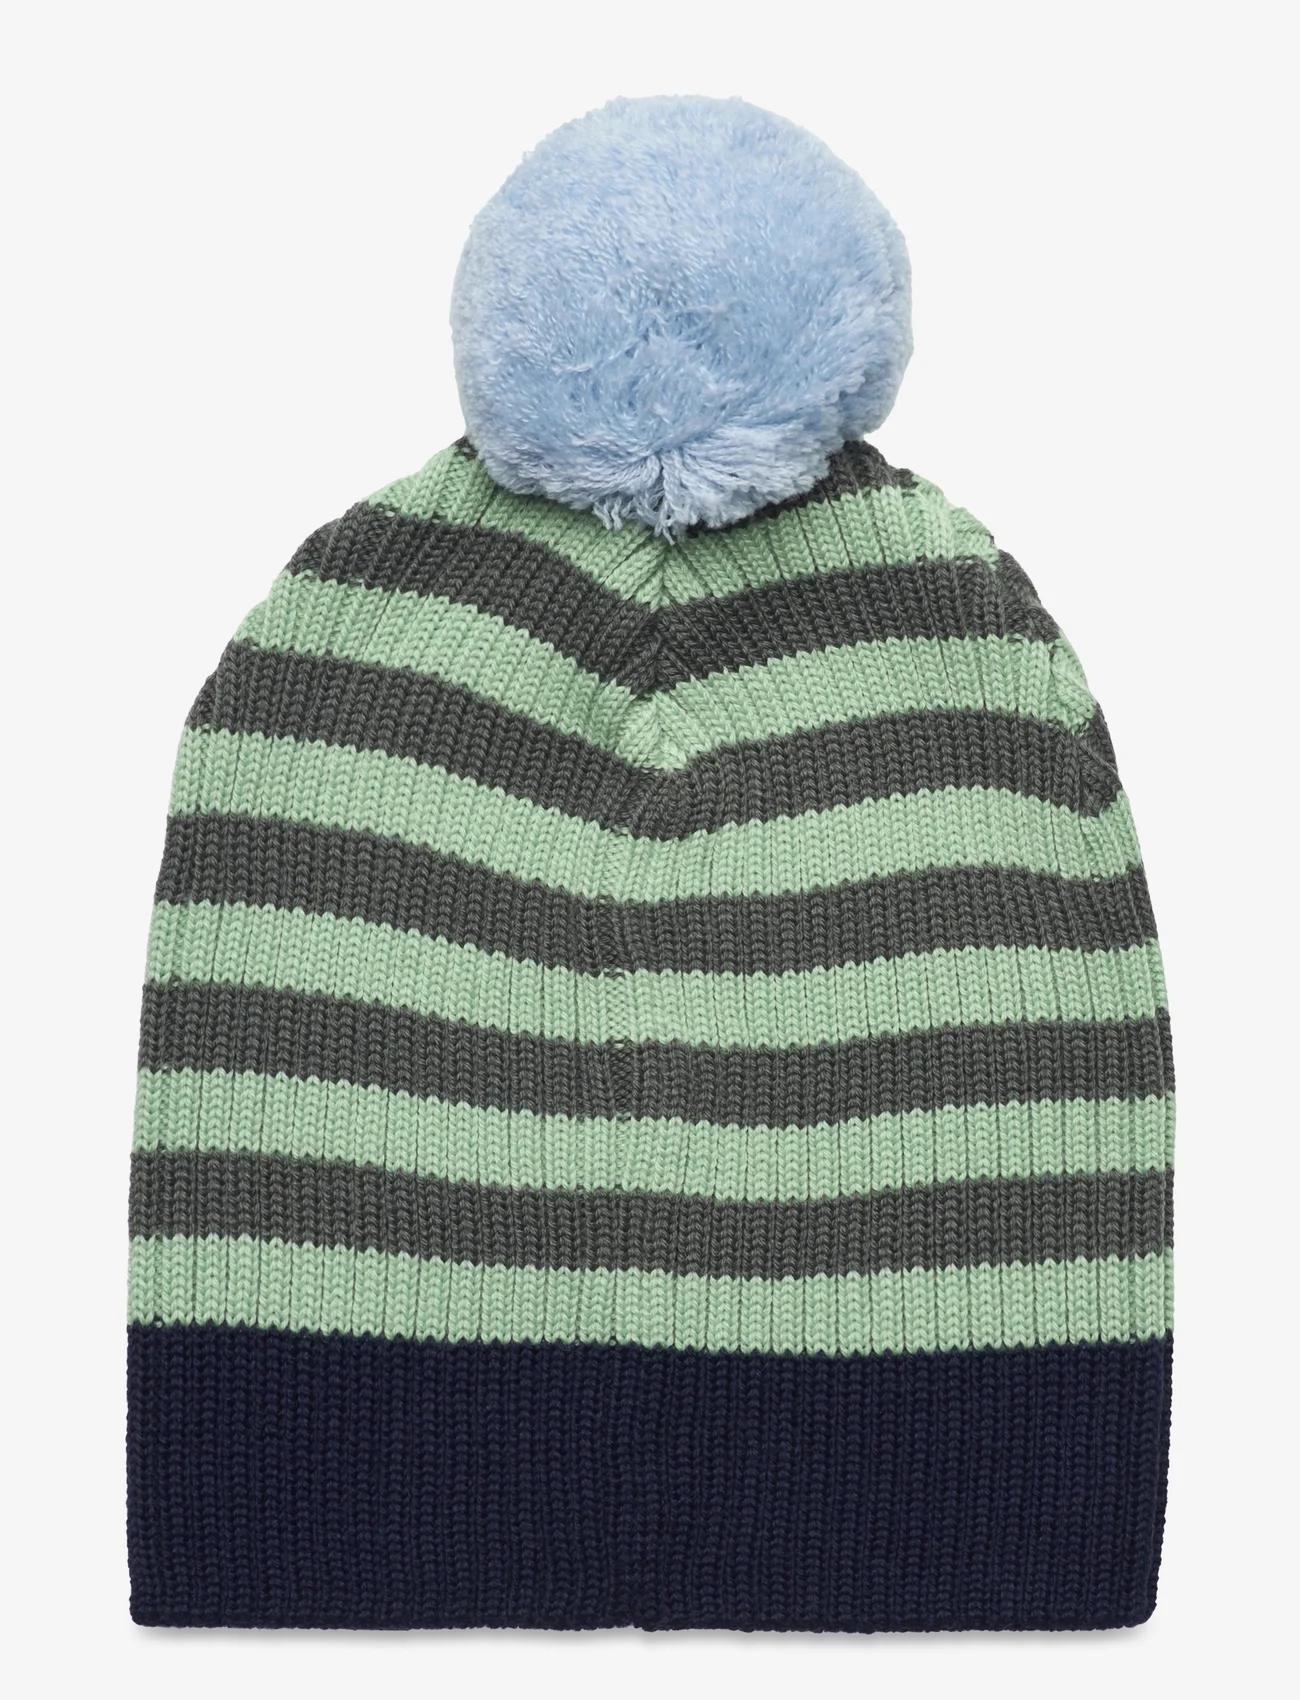 Reima - Beanie, Tipla - winter hats - navy - 1